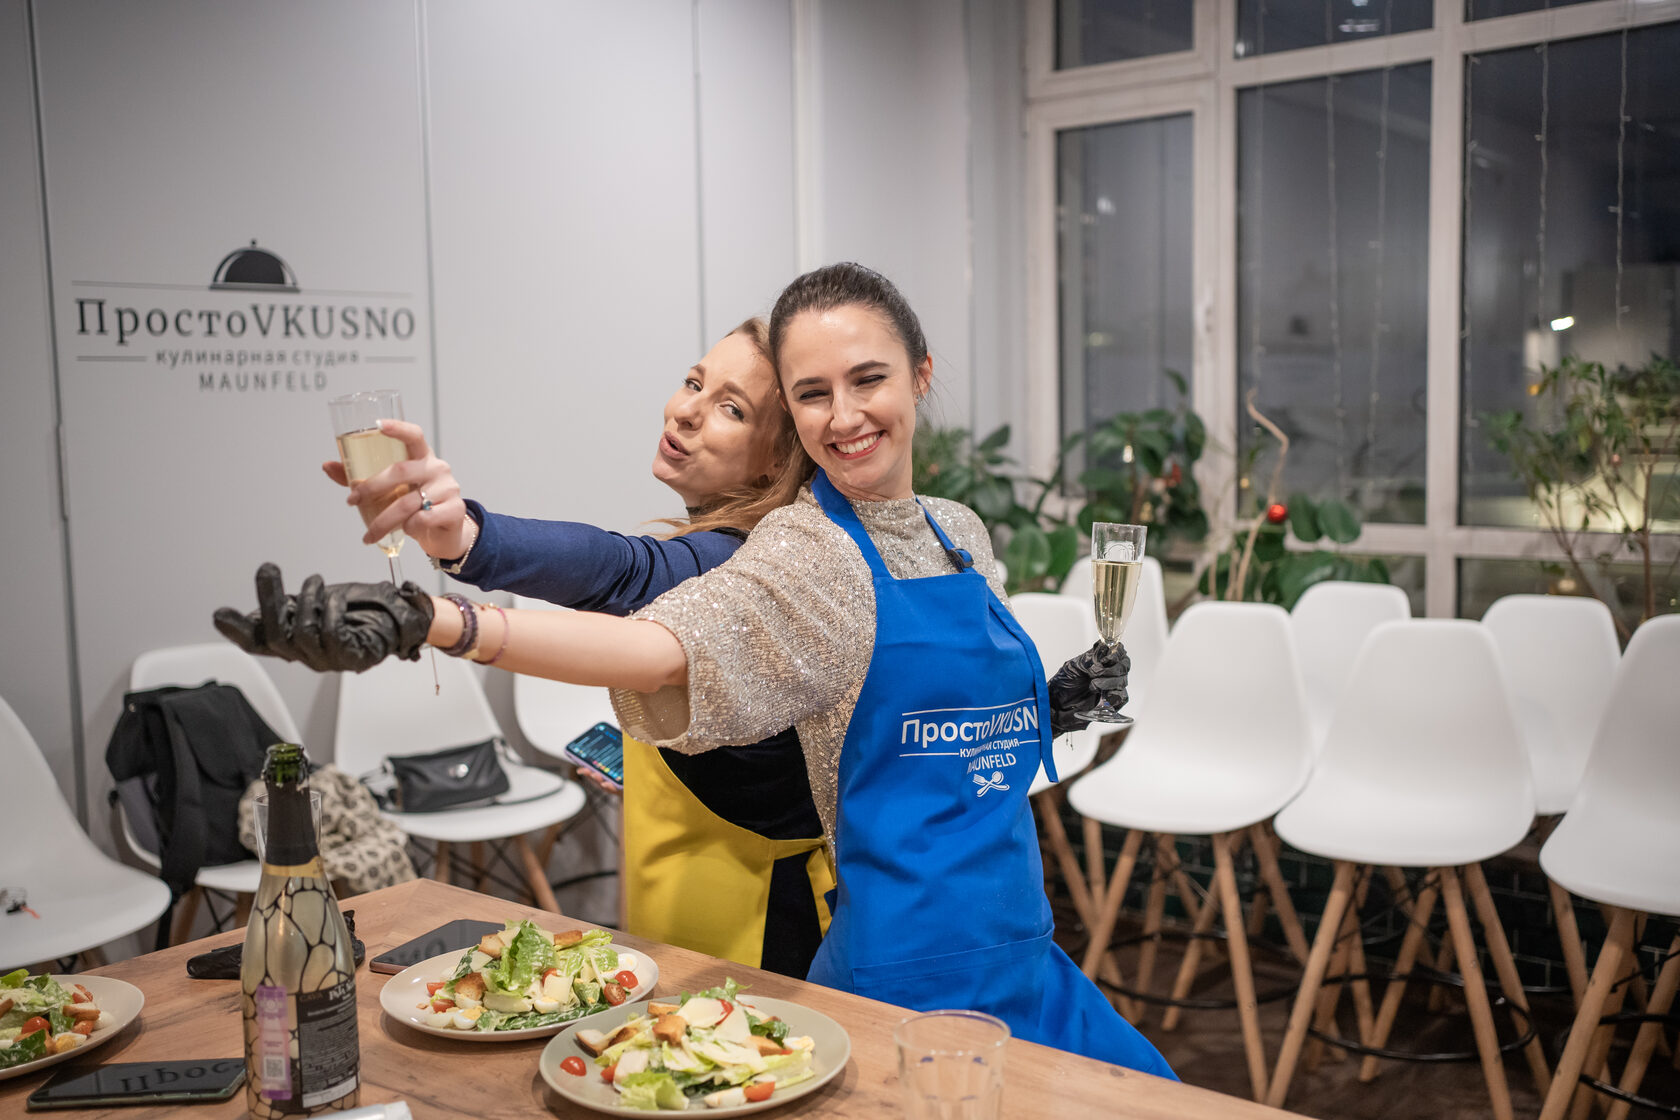 Готовим дома c Novikov School: почему стоит попробовать кулинарные мастер-классы онлайн